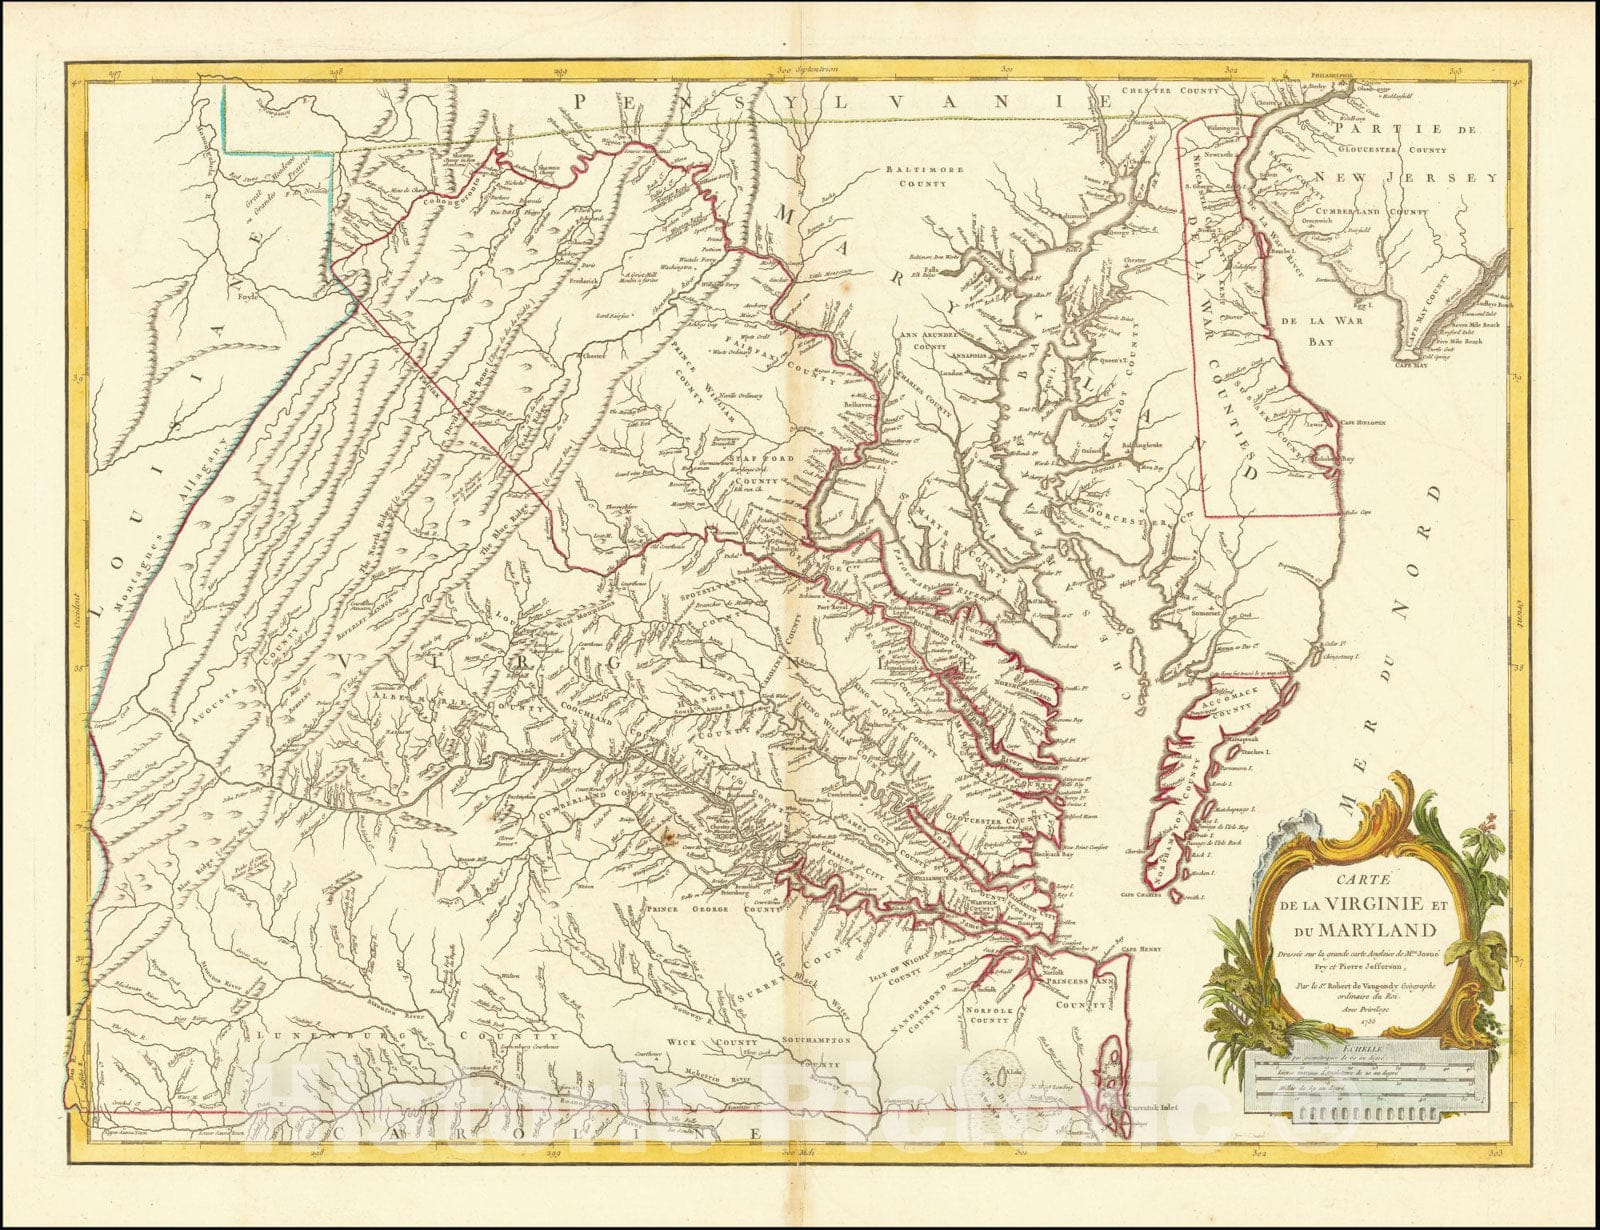 Historic Map : Carte de la Virginie et du Maryland Dressee sur la grande carte Angloise de Mrs. Josue Fry et Pierre Jefferson, 1755, First State, with Lord Fairfax Line Shown, 1755, Vintage Wall Art